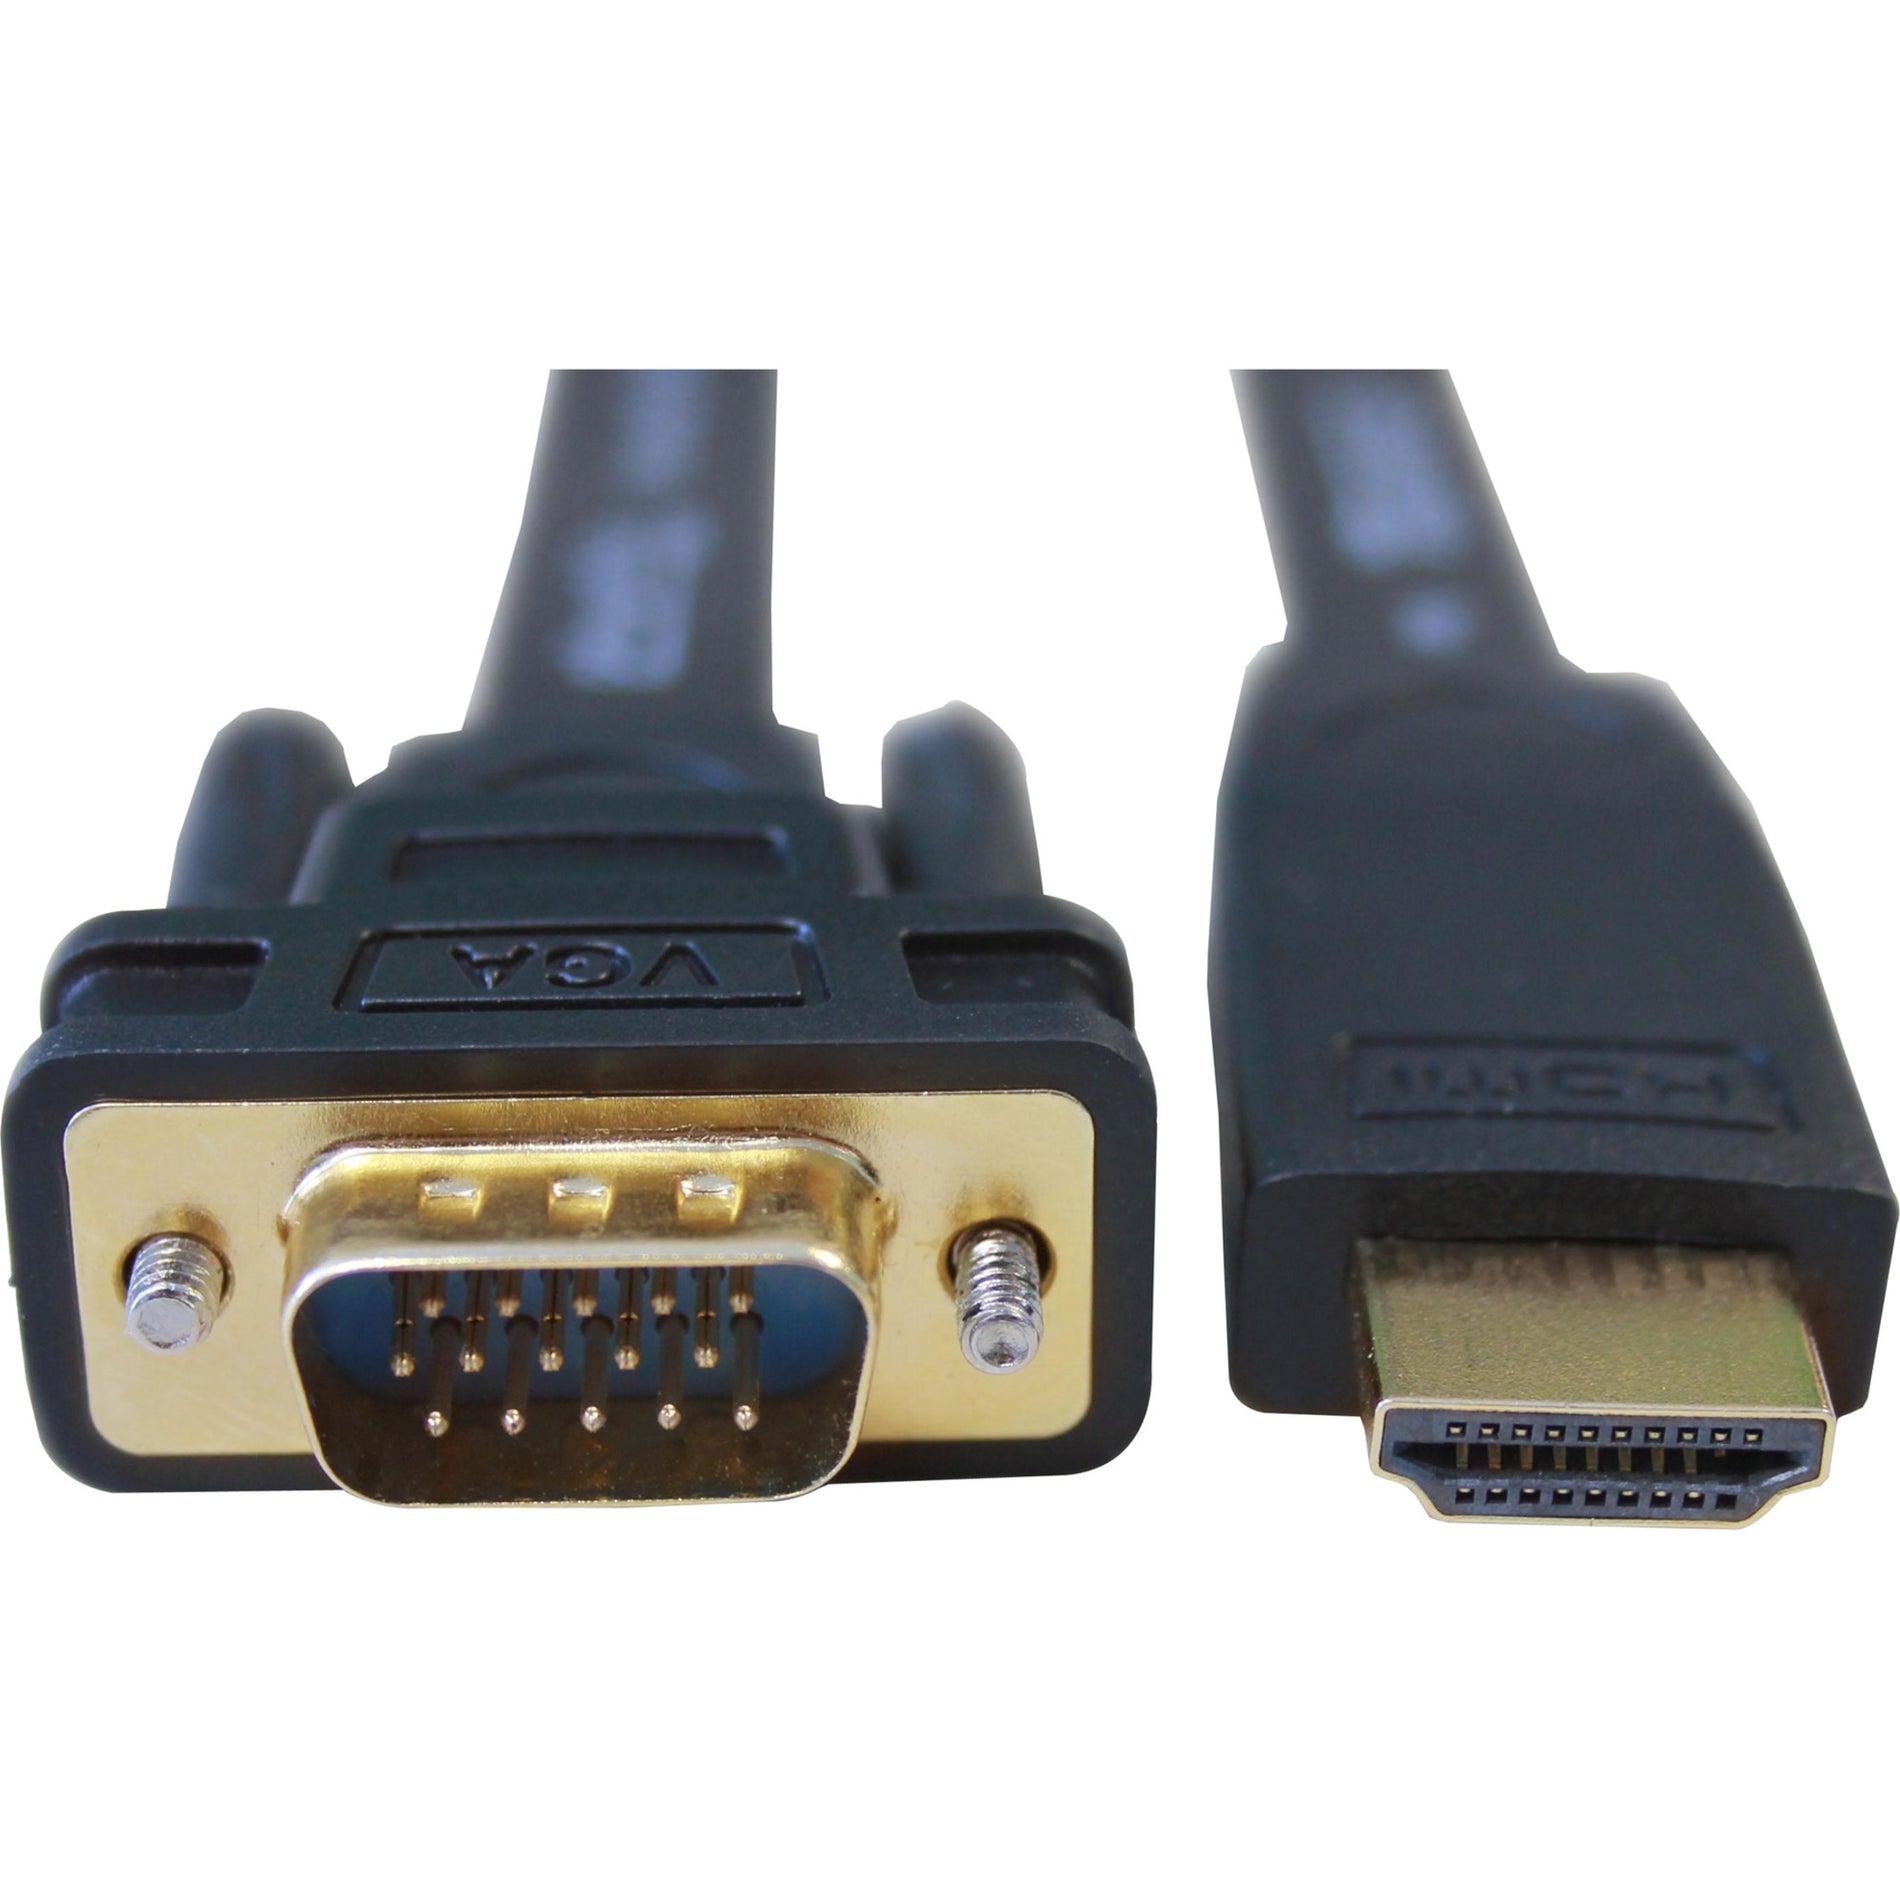 سلك تحويل من HDMI إلى VGA من Plugable، طول ٦ اقدام، دقة مدعومة ١٩٢٠ x ١٠٨٠ اسم العلامة التجارية: Plugable